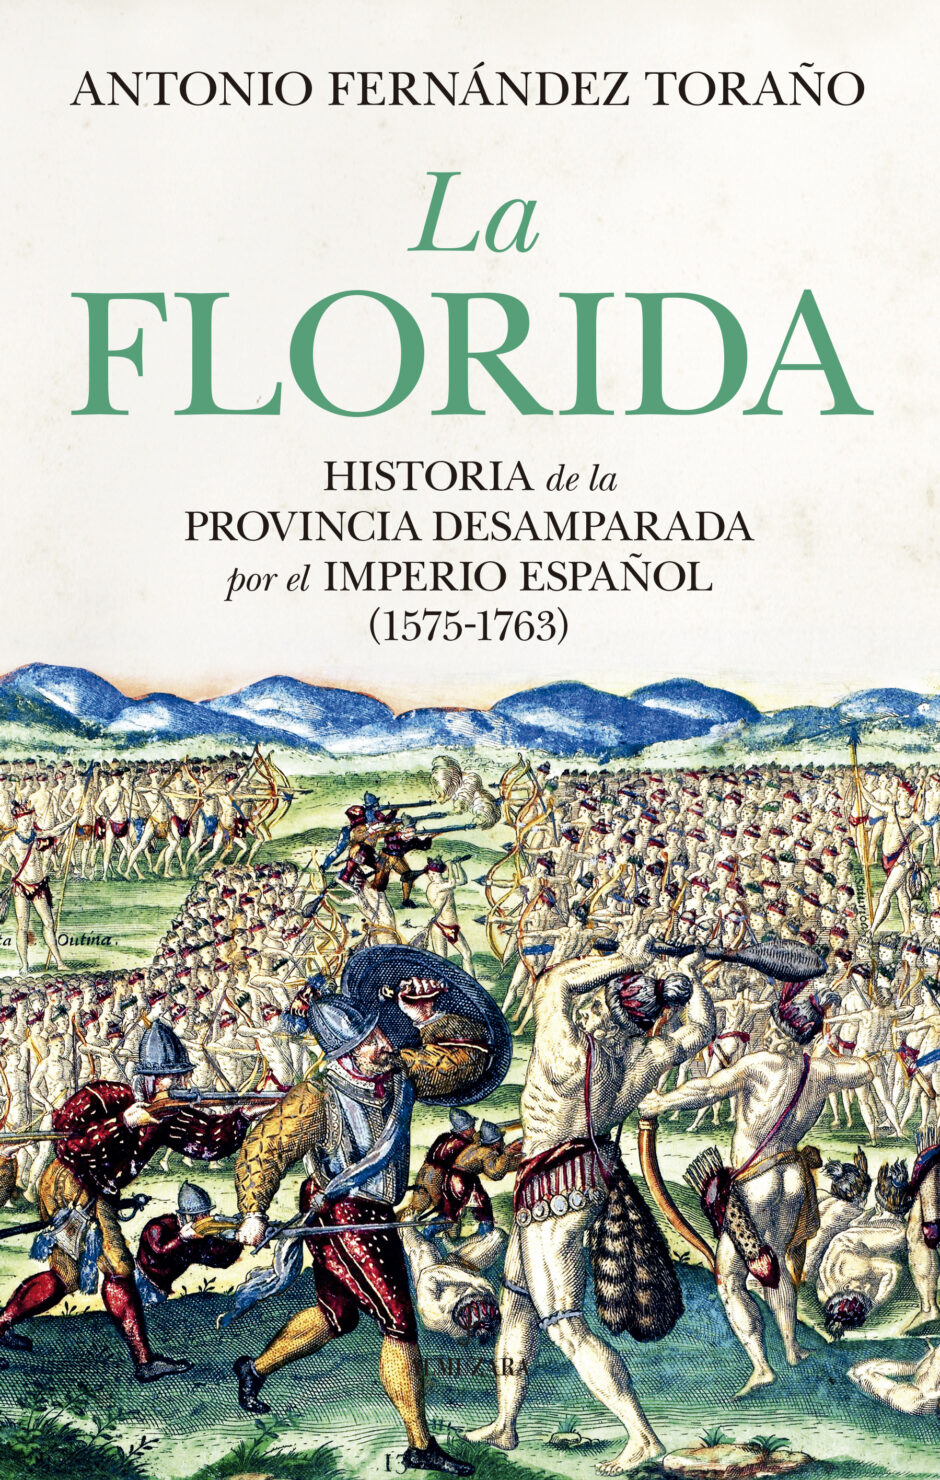 La historia de los que desafiaron las adversidades y mantuvieron viva la llama del dominio español en Florida durante casi dos siglos